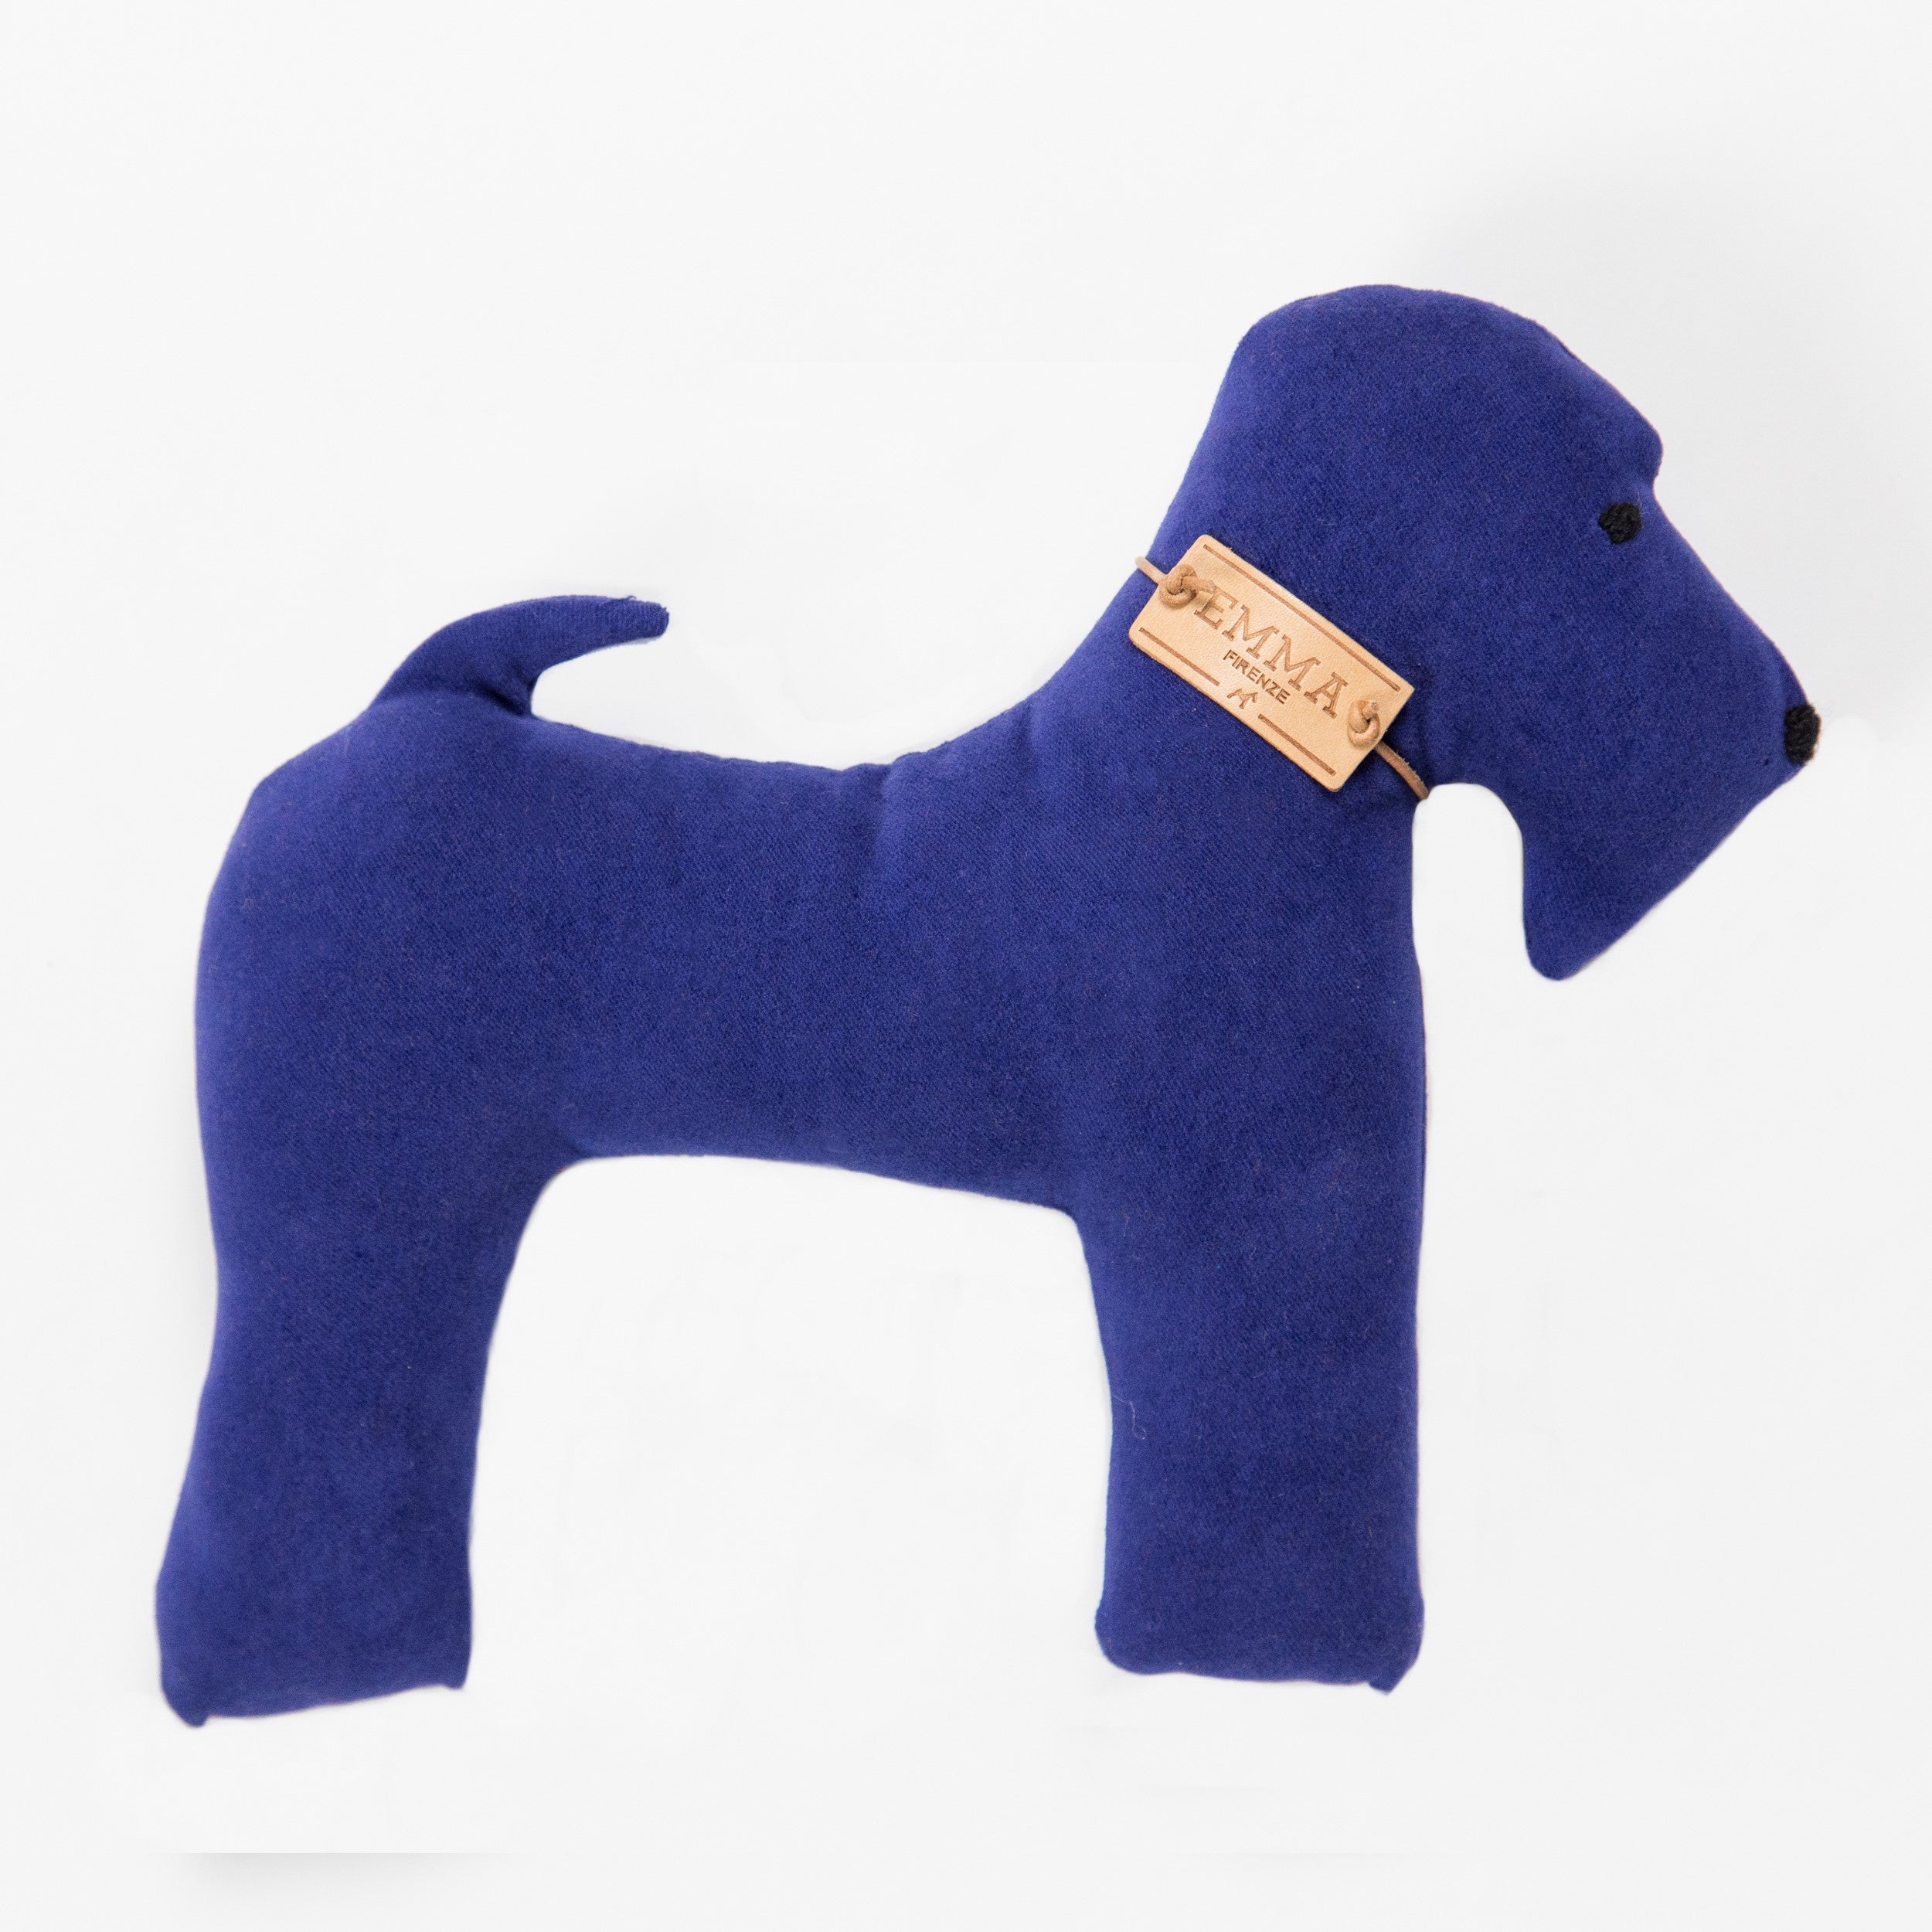 Gift Toy In Blue Moleskin Fabric Emma Firenze